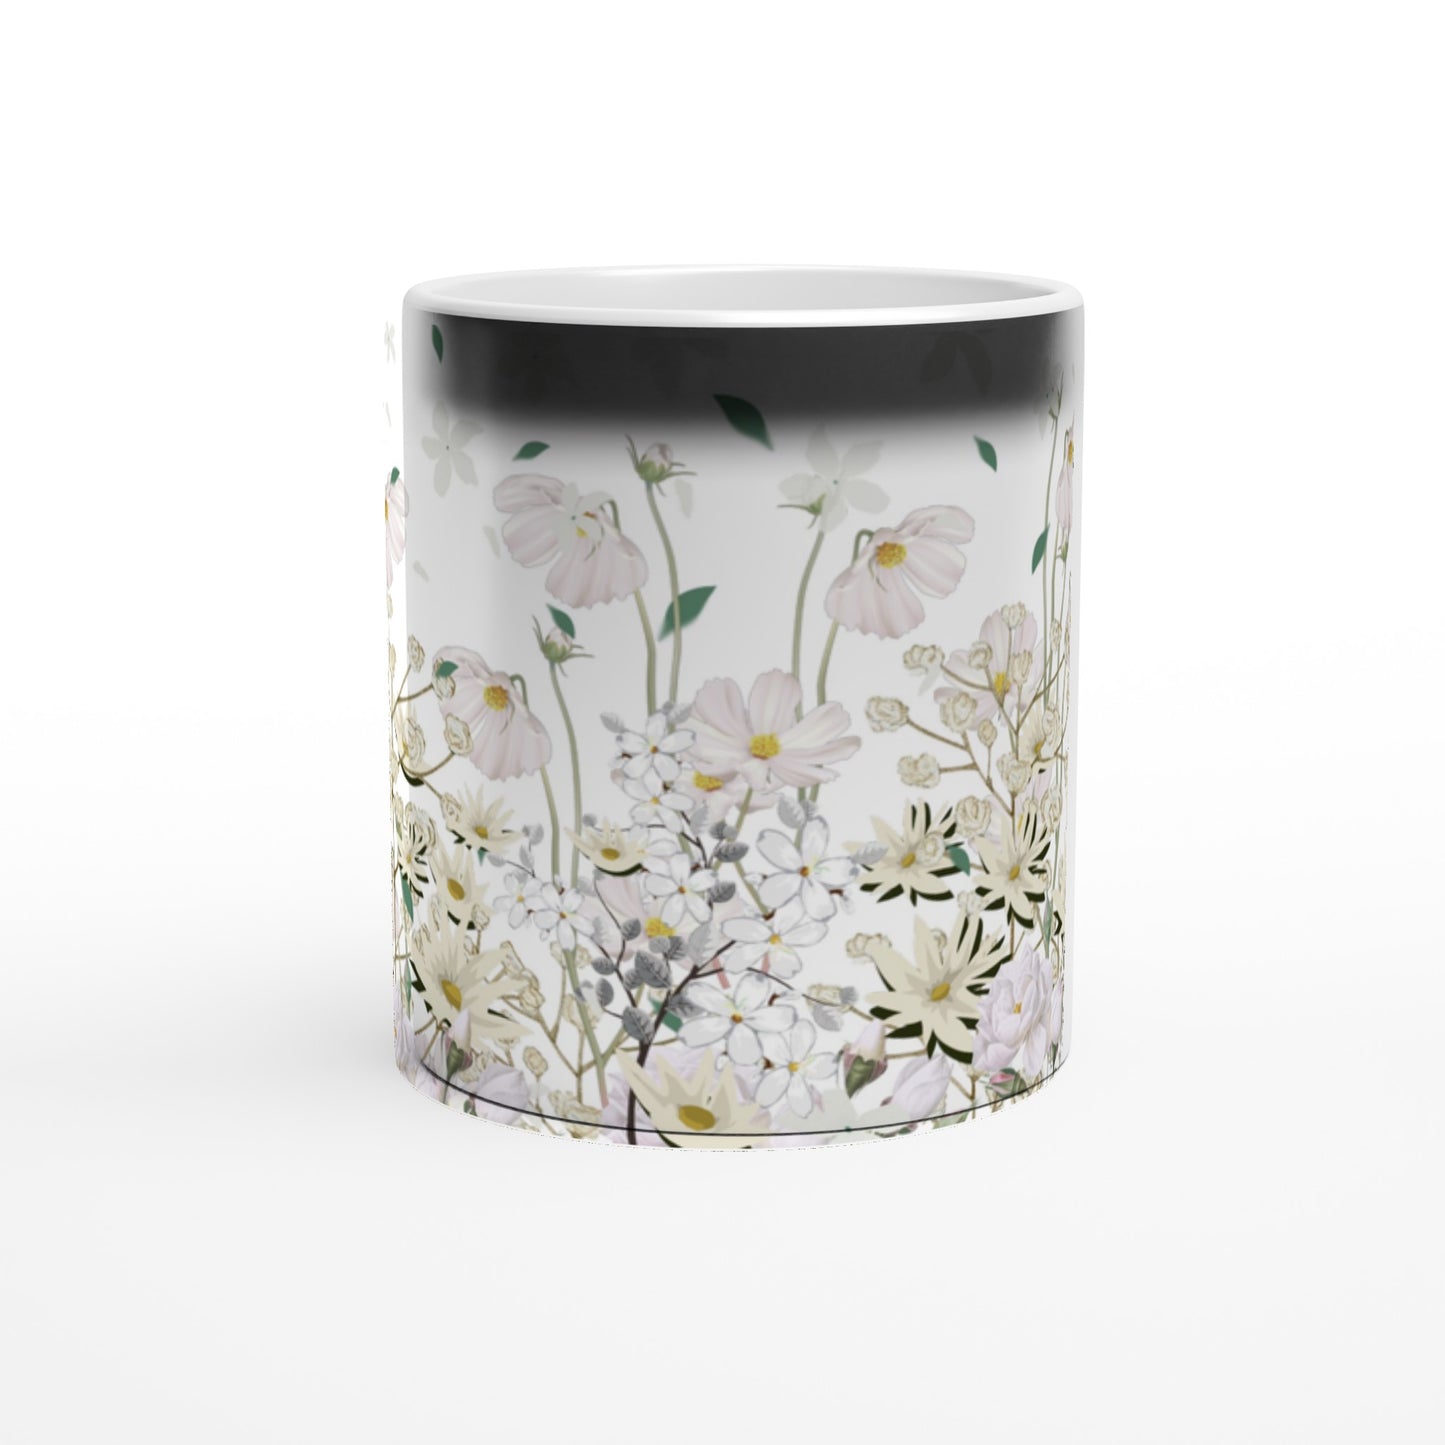 Bonita taza mágica con flores blancas